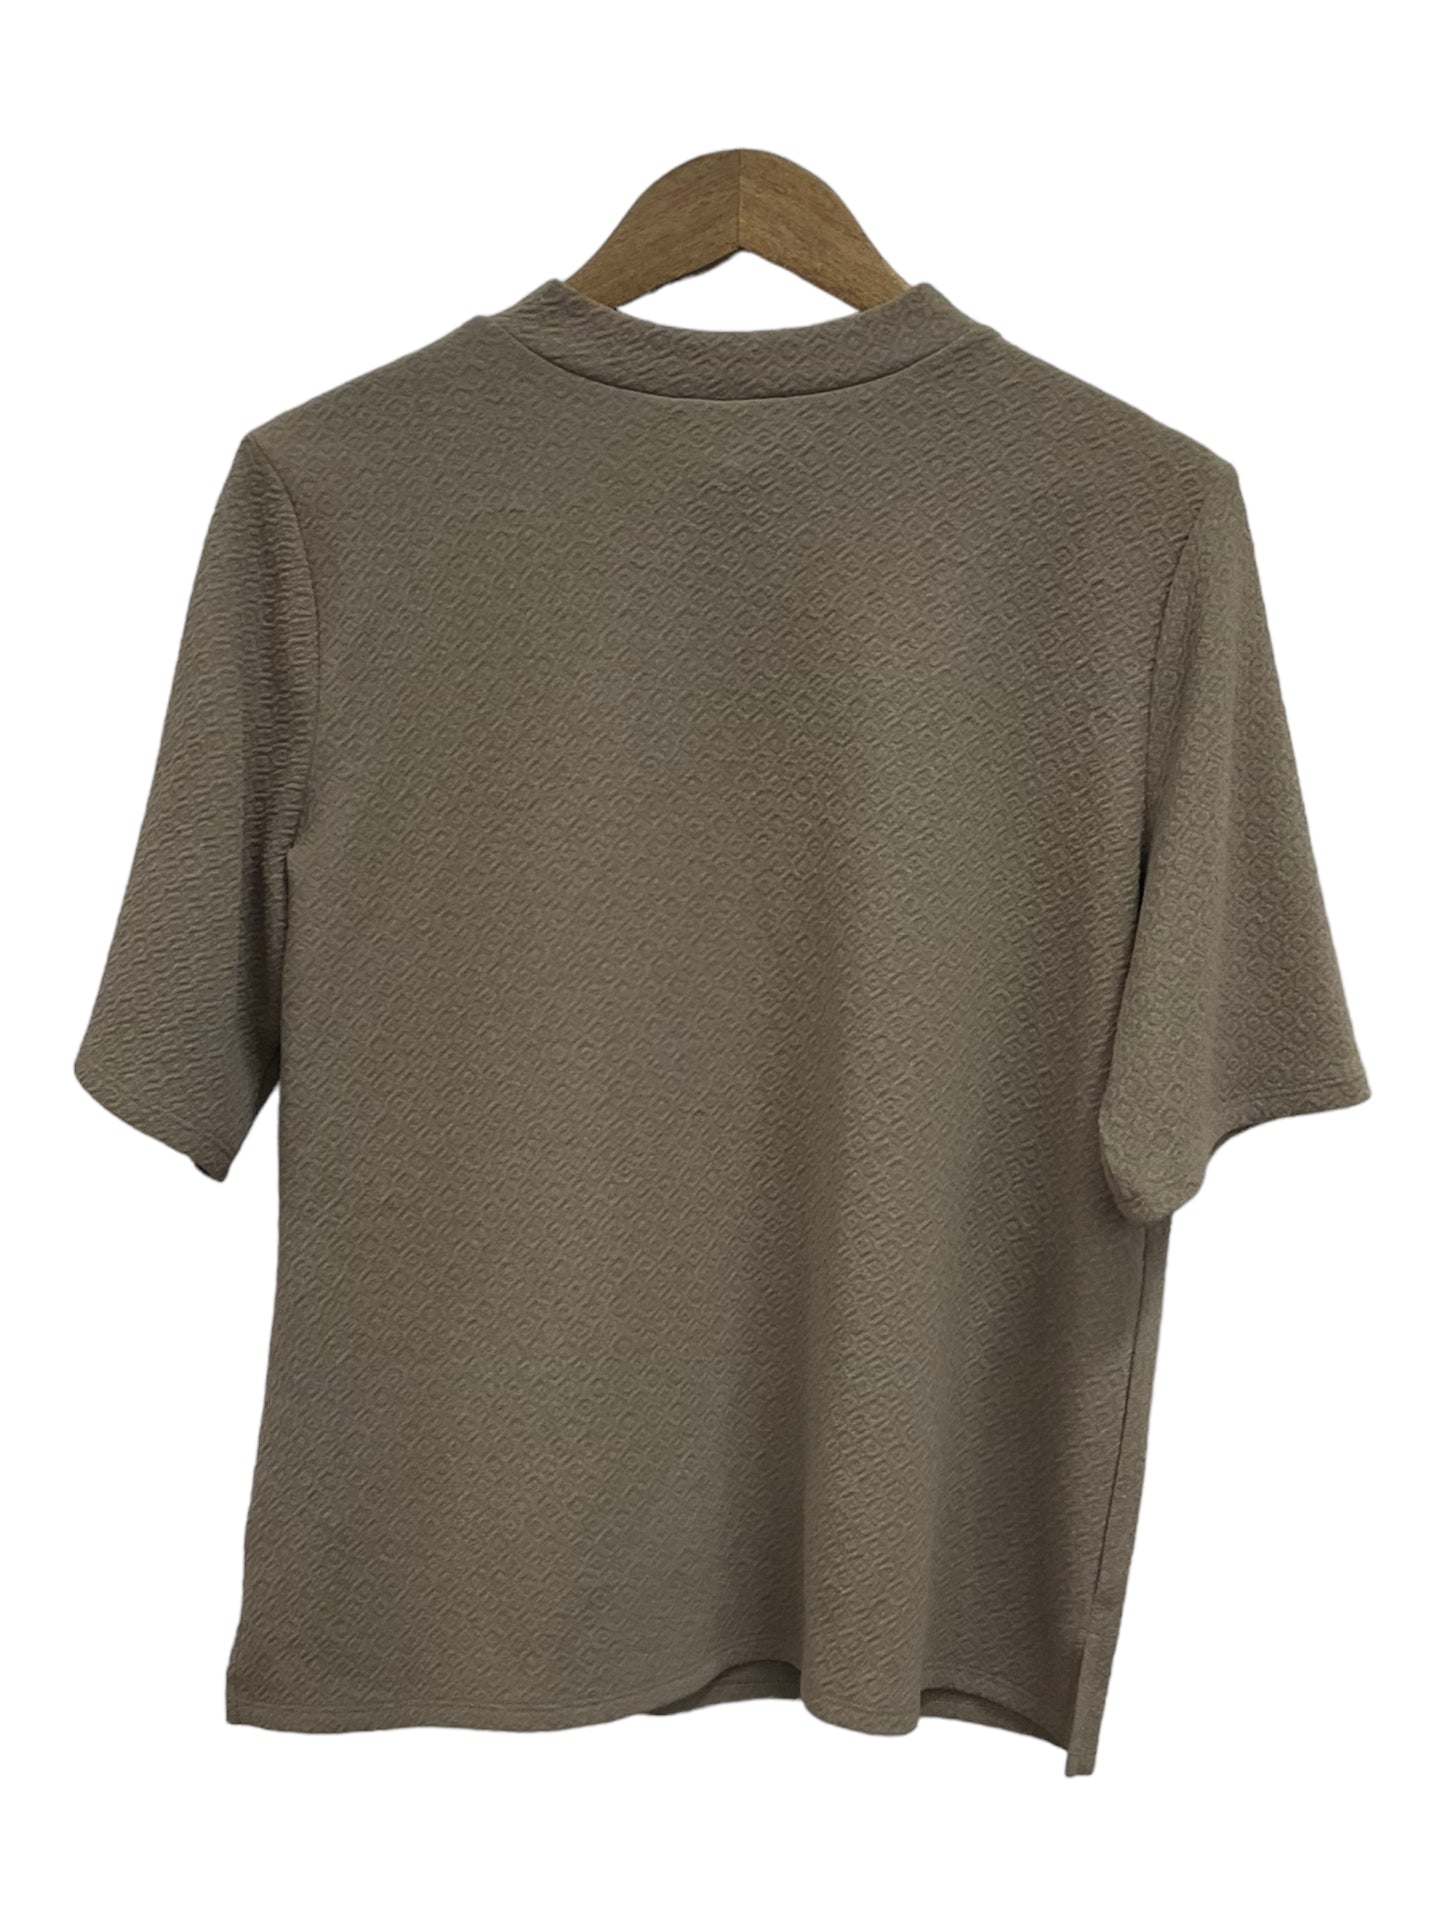 Top Short Sleeve Basic By Worthington  Size: Xl